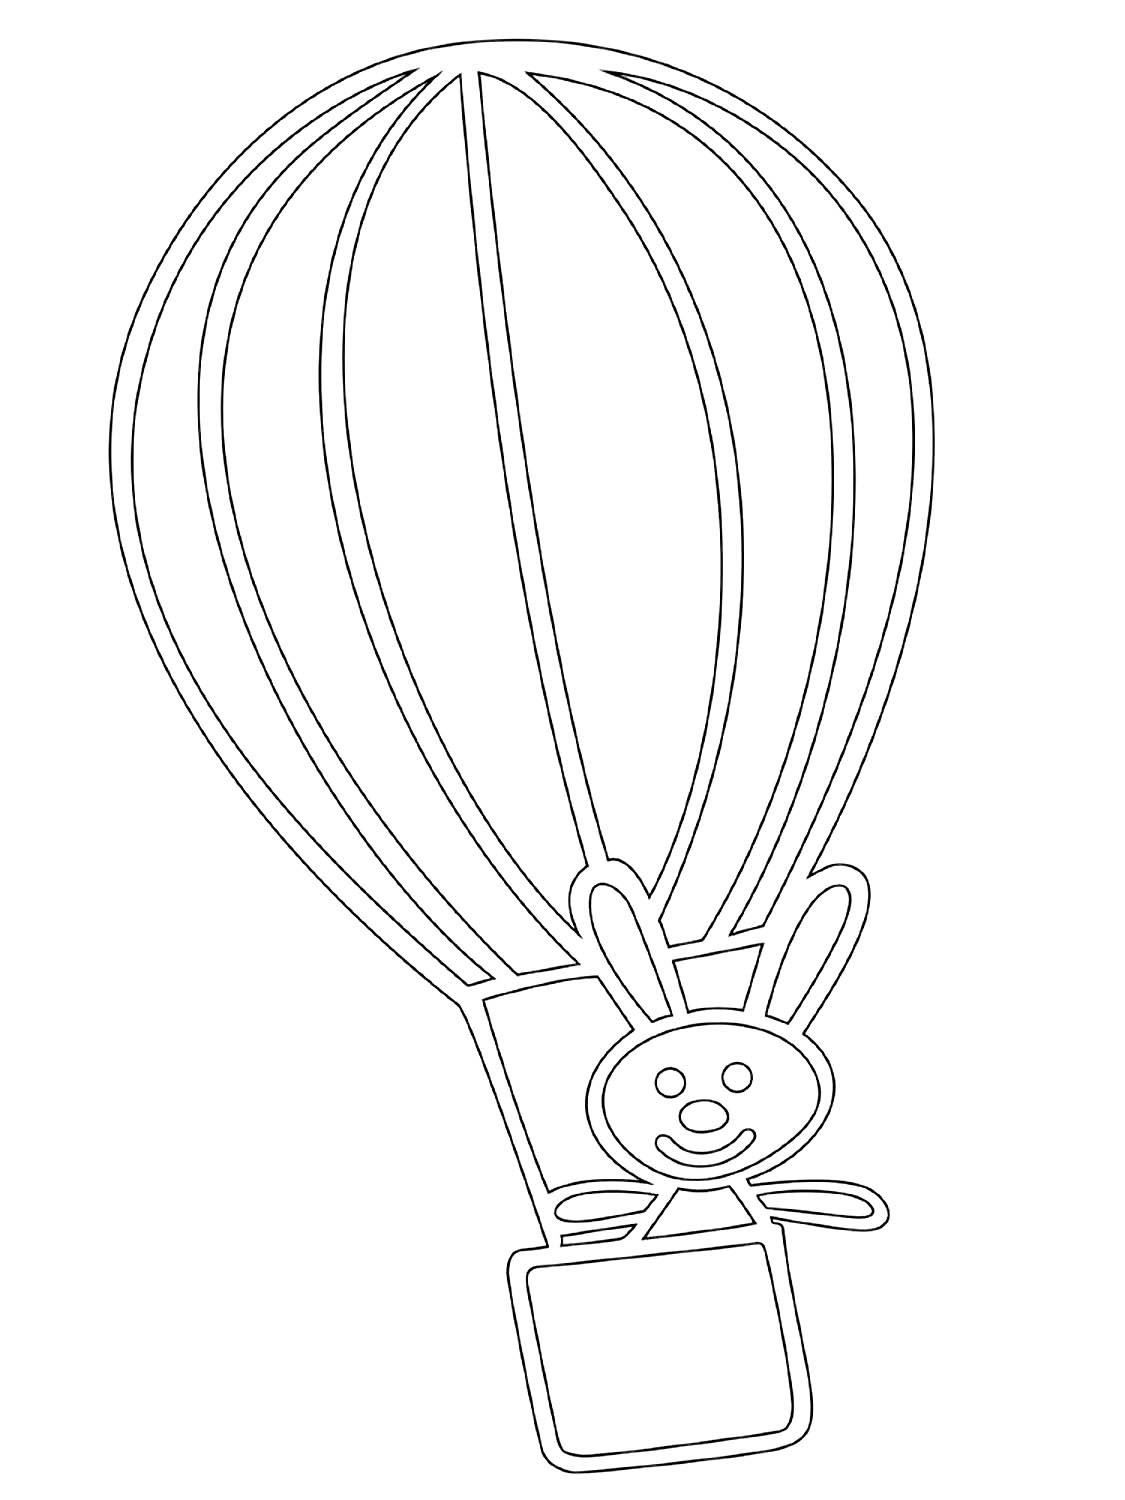 Макеты воздушных шаров. Воздушный шар раскраска. Воздушный шар с корзиной трафарет. Воздушный шар раскраска для детей. Воздушные шары для раскрашивания детям.